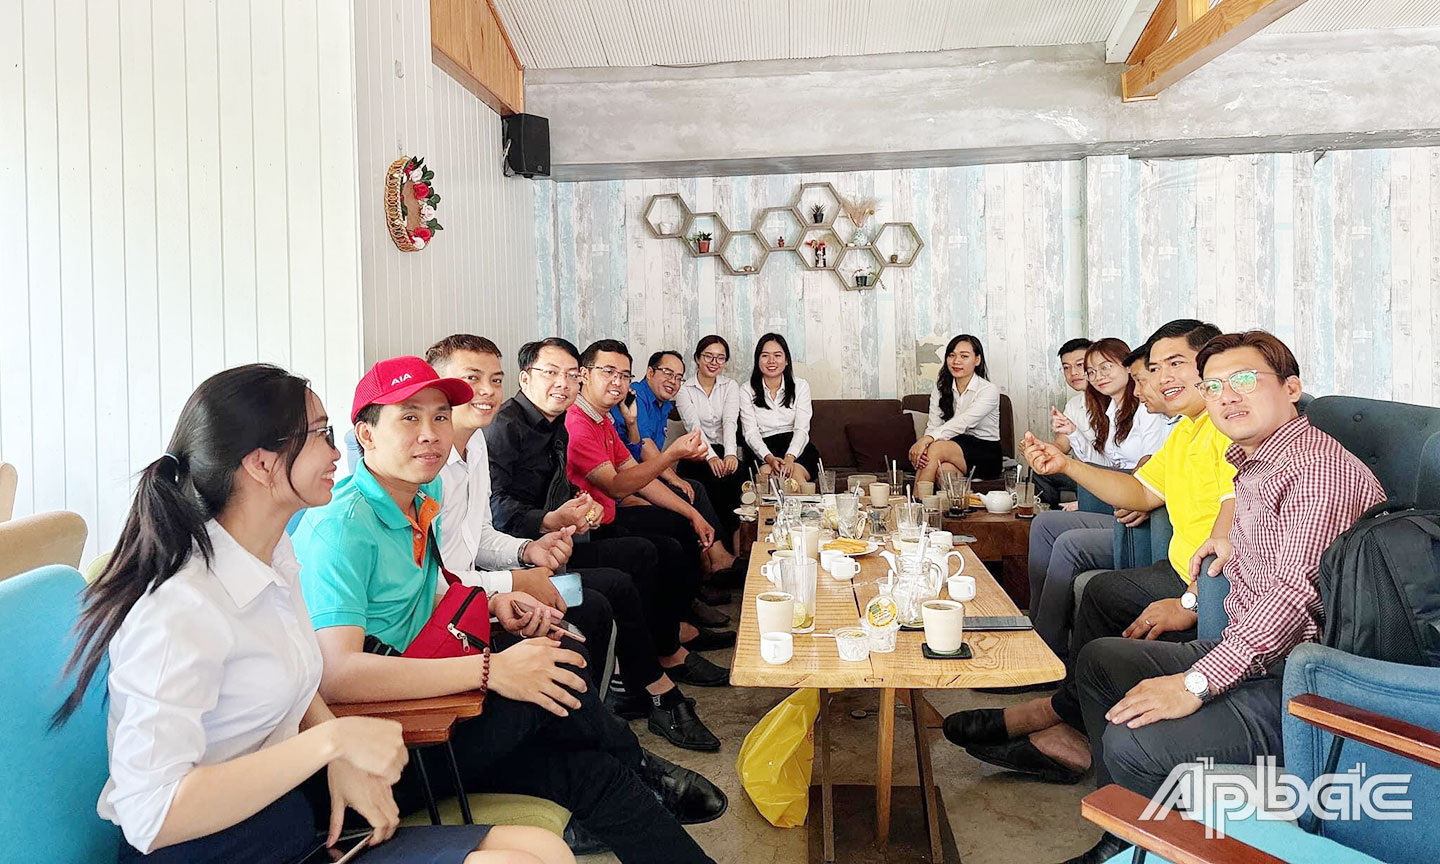 Các thành viên CLB tham gia “Cà phê sáng khởi nghiệp”.